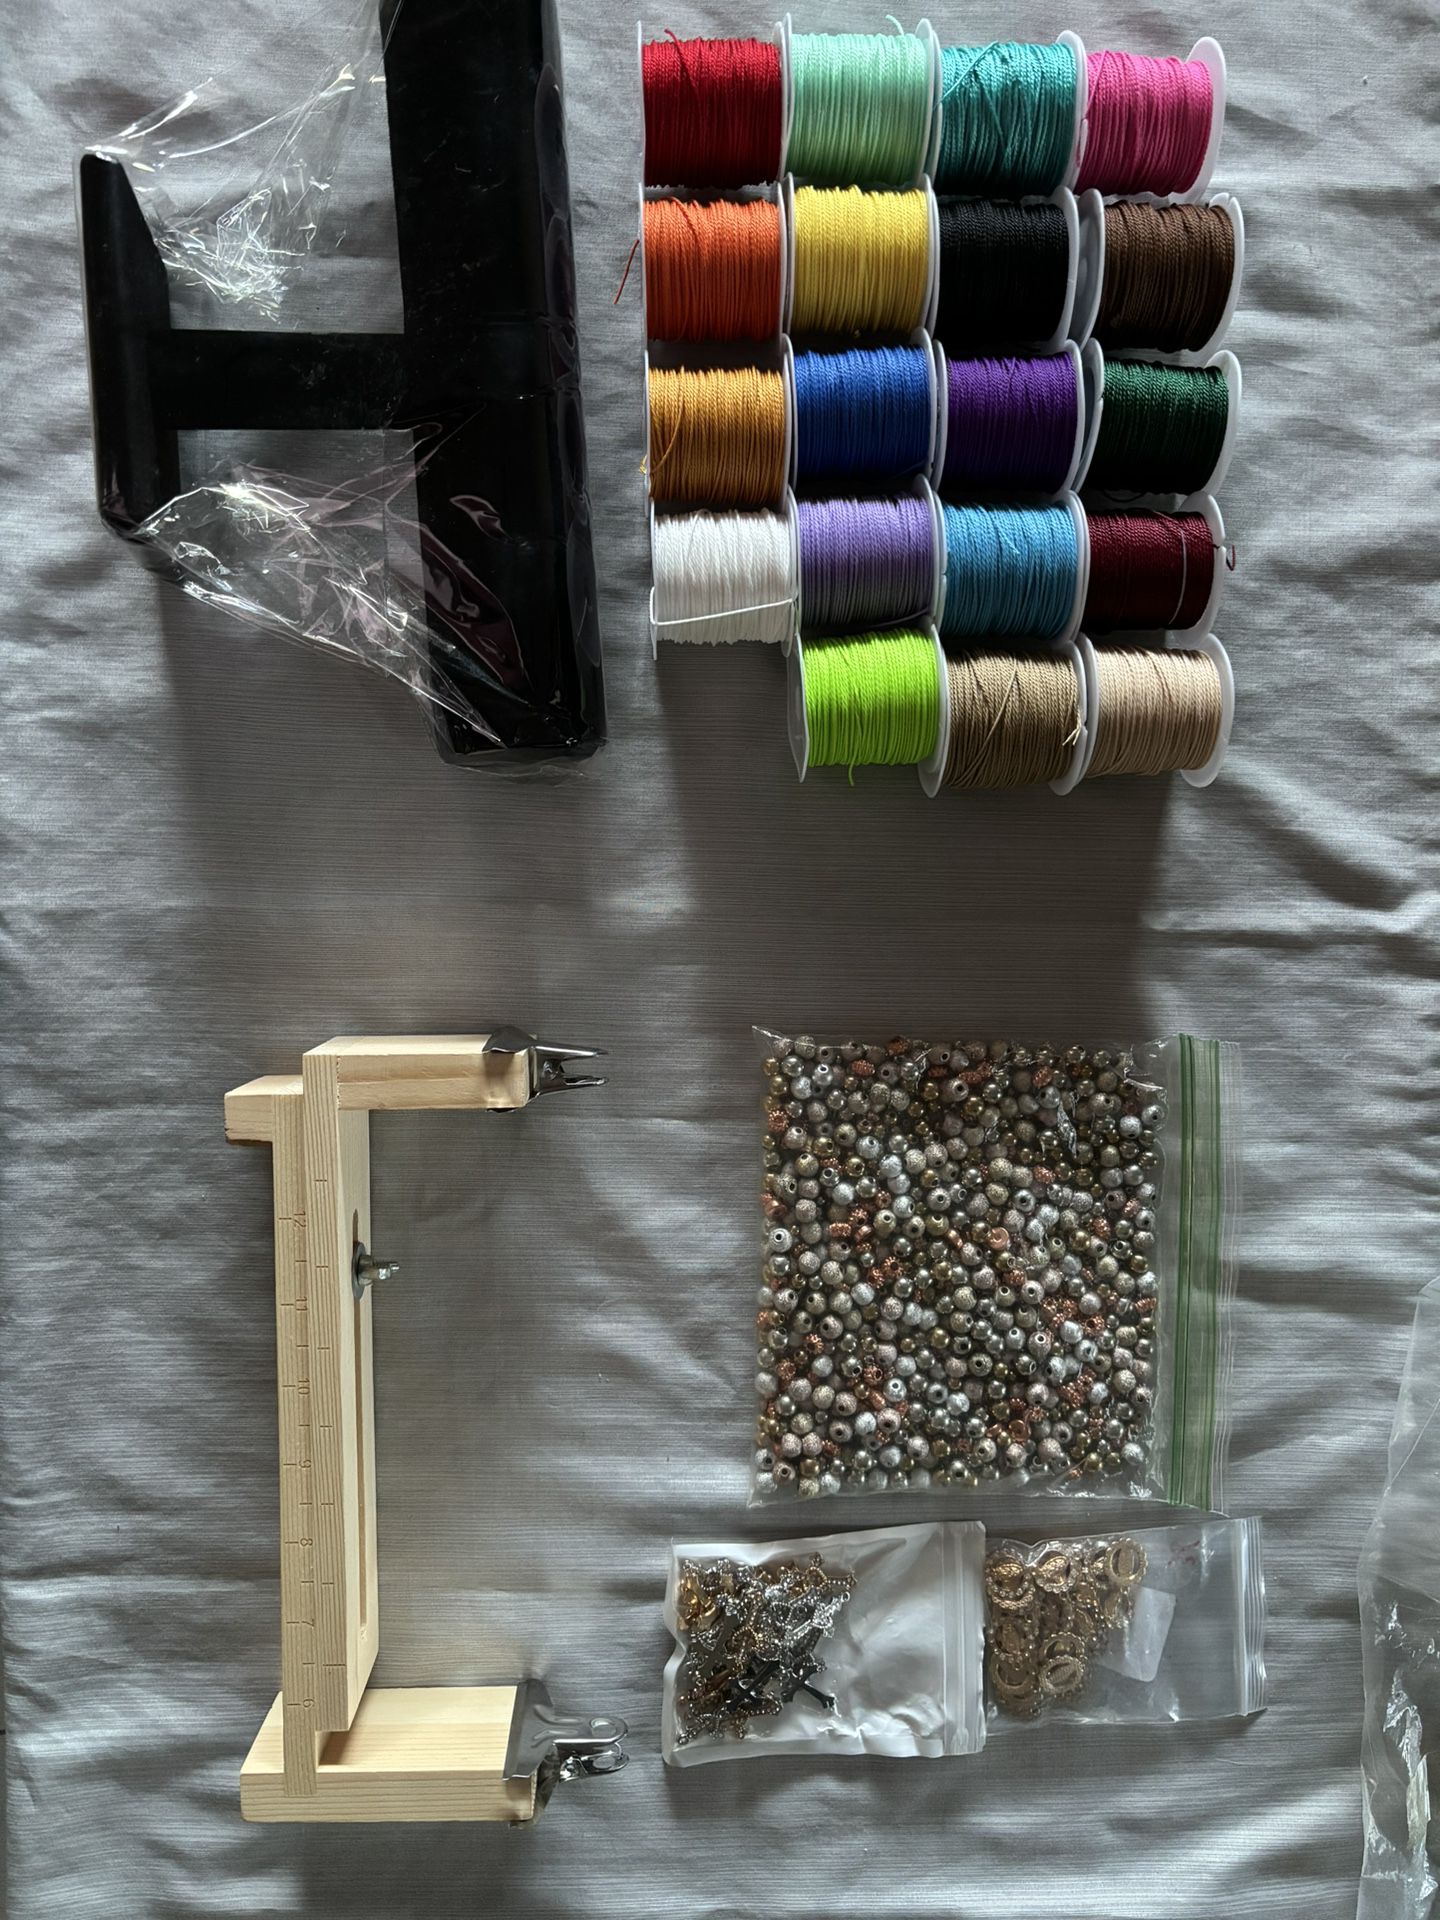 Bracelet Making Kit